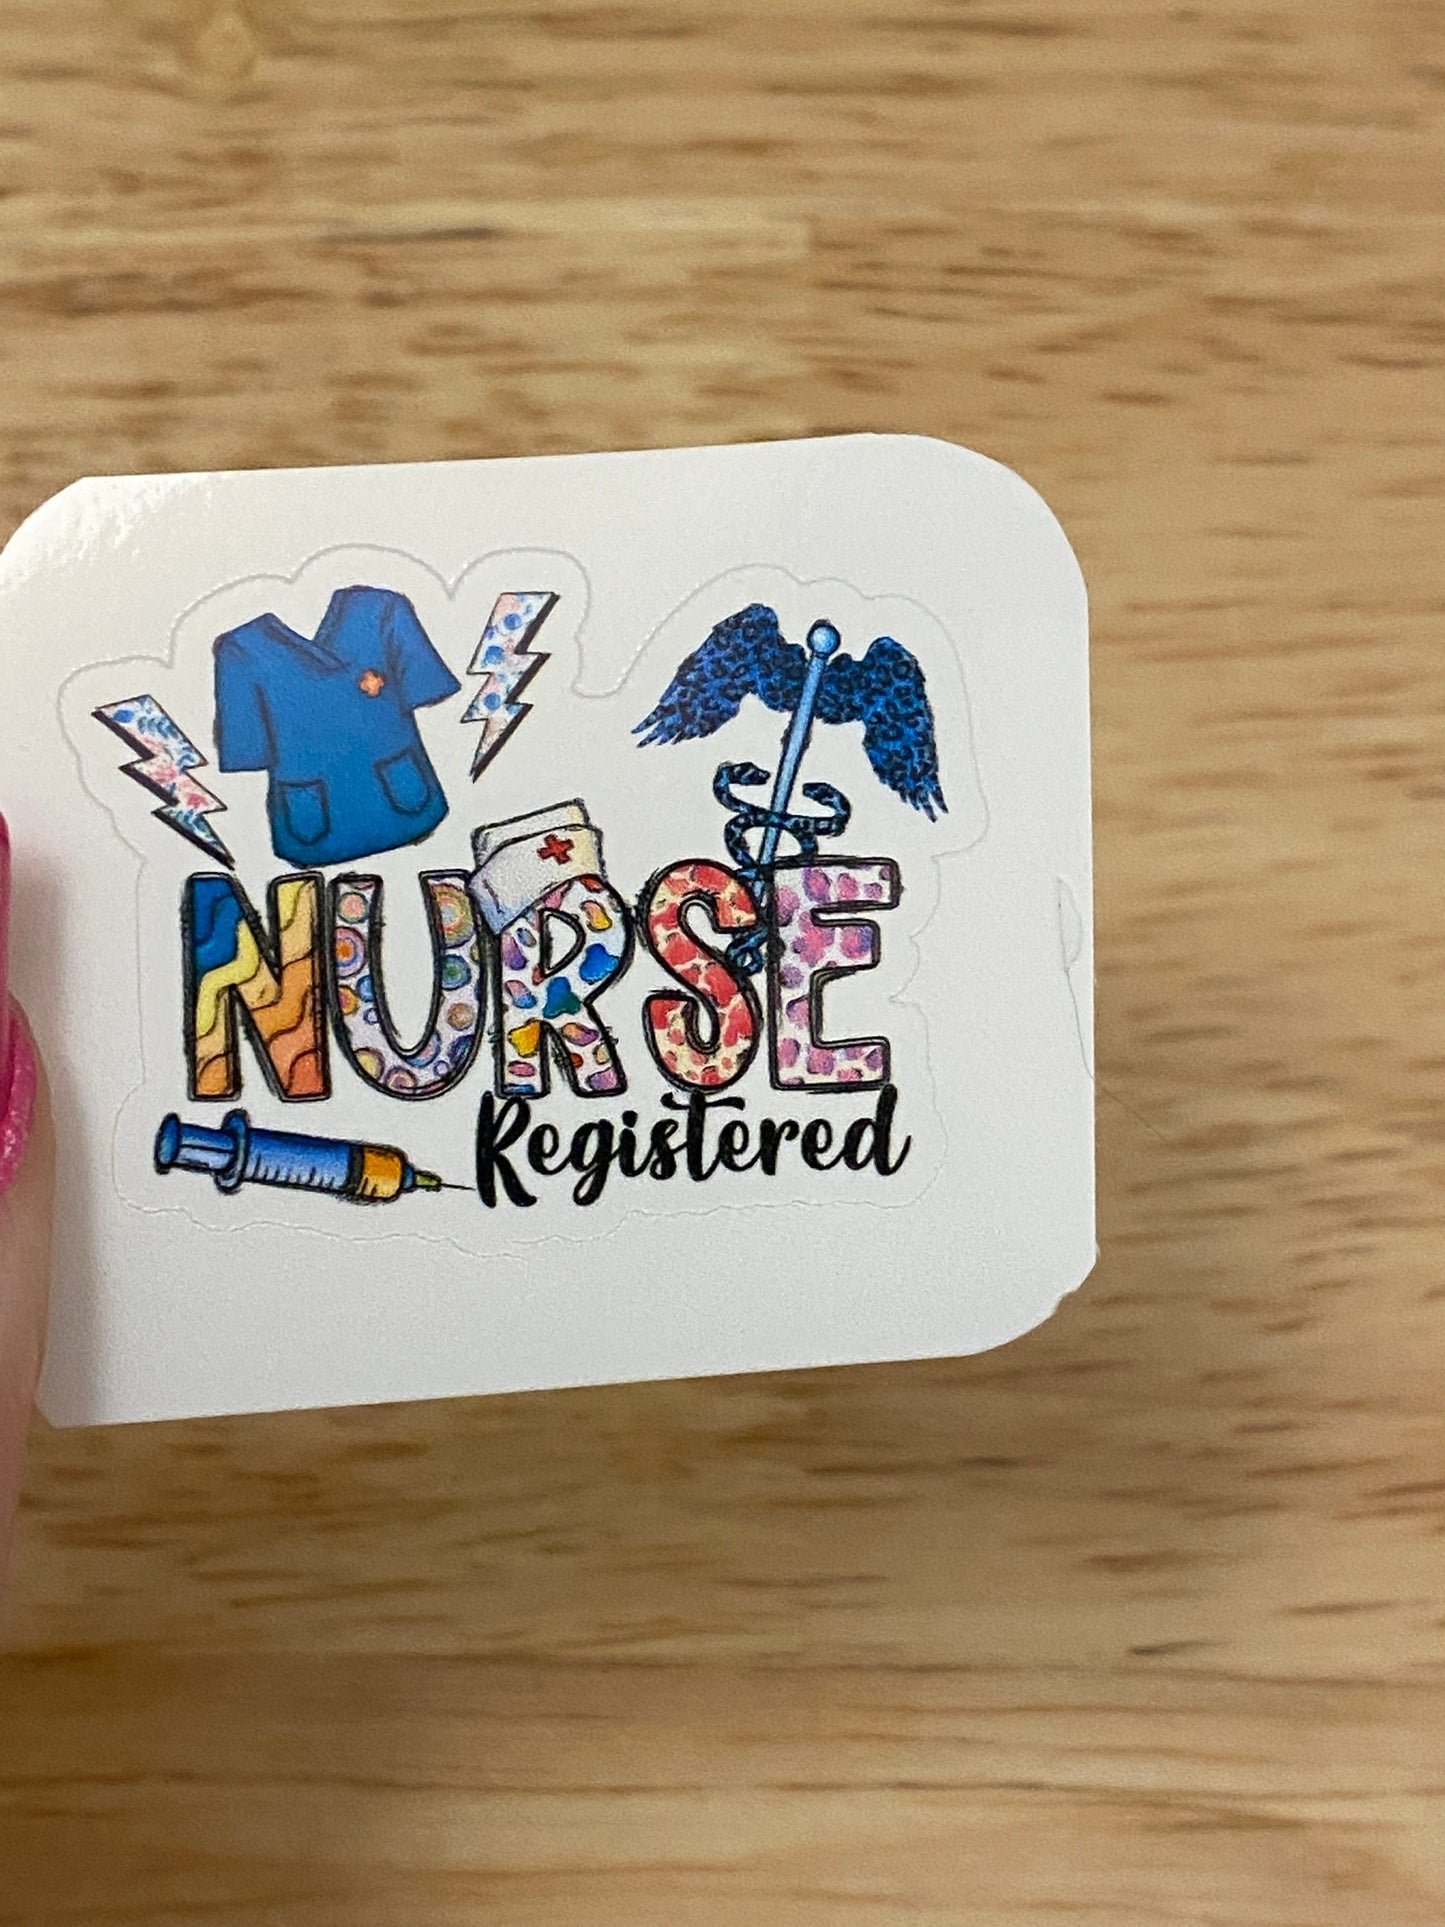 Scrubs Registered Nurse Sticker, RN Sticker, Medical STICKER, Cute Medical Design Sticker. Registered Nurse with Scrubs Sticker